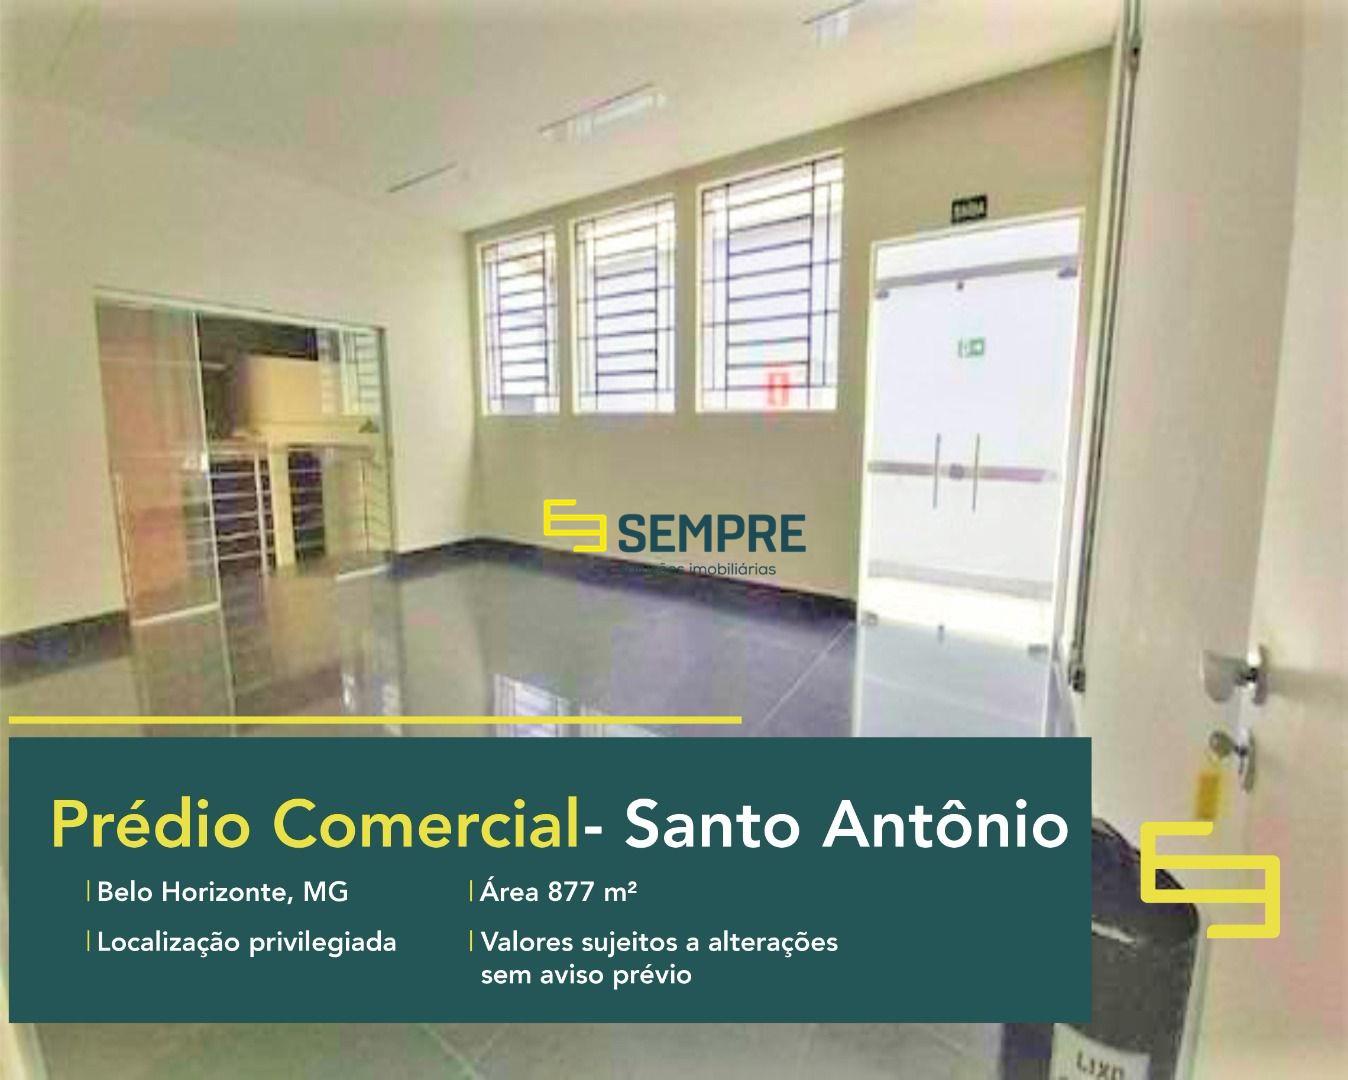 Prédio comercial para alugar no Santo Antônio em Belo Horizonte, excelente localização. O andar comercial conta com área de 877 m².